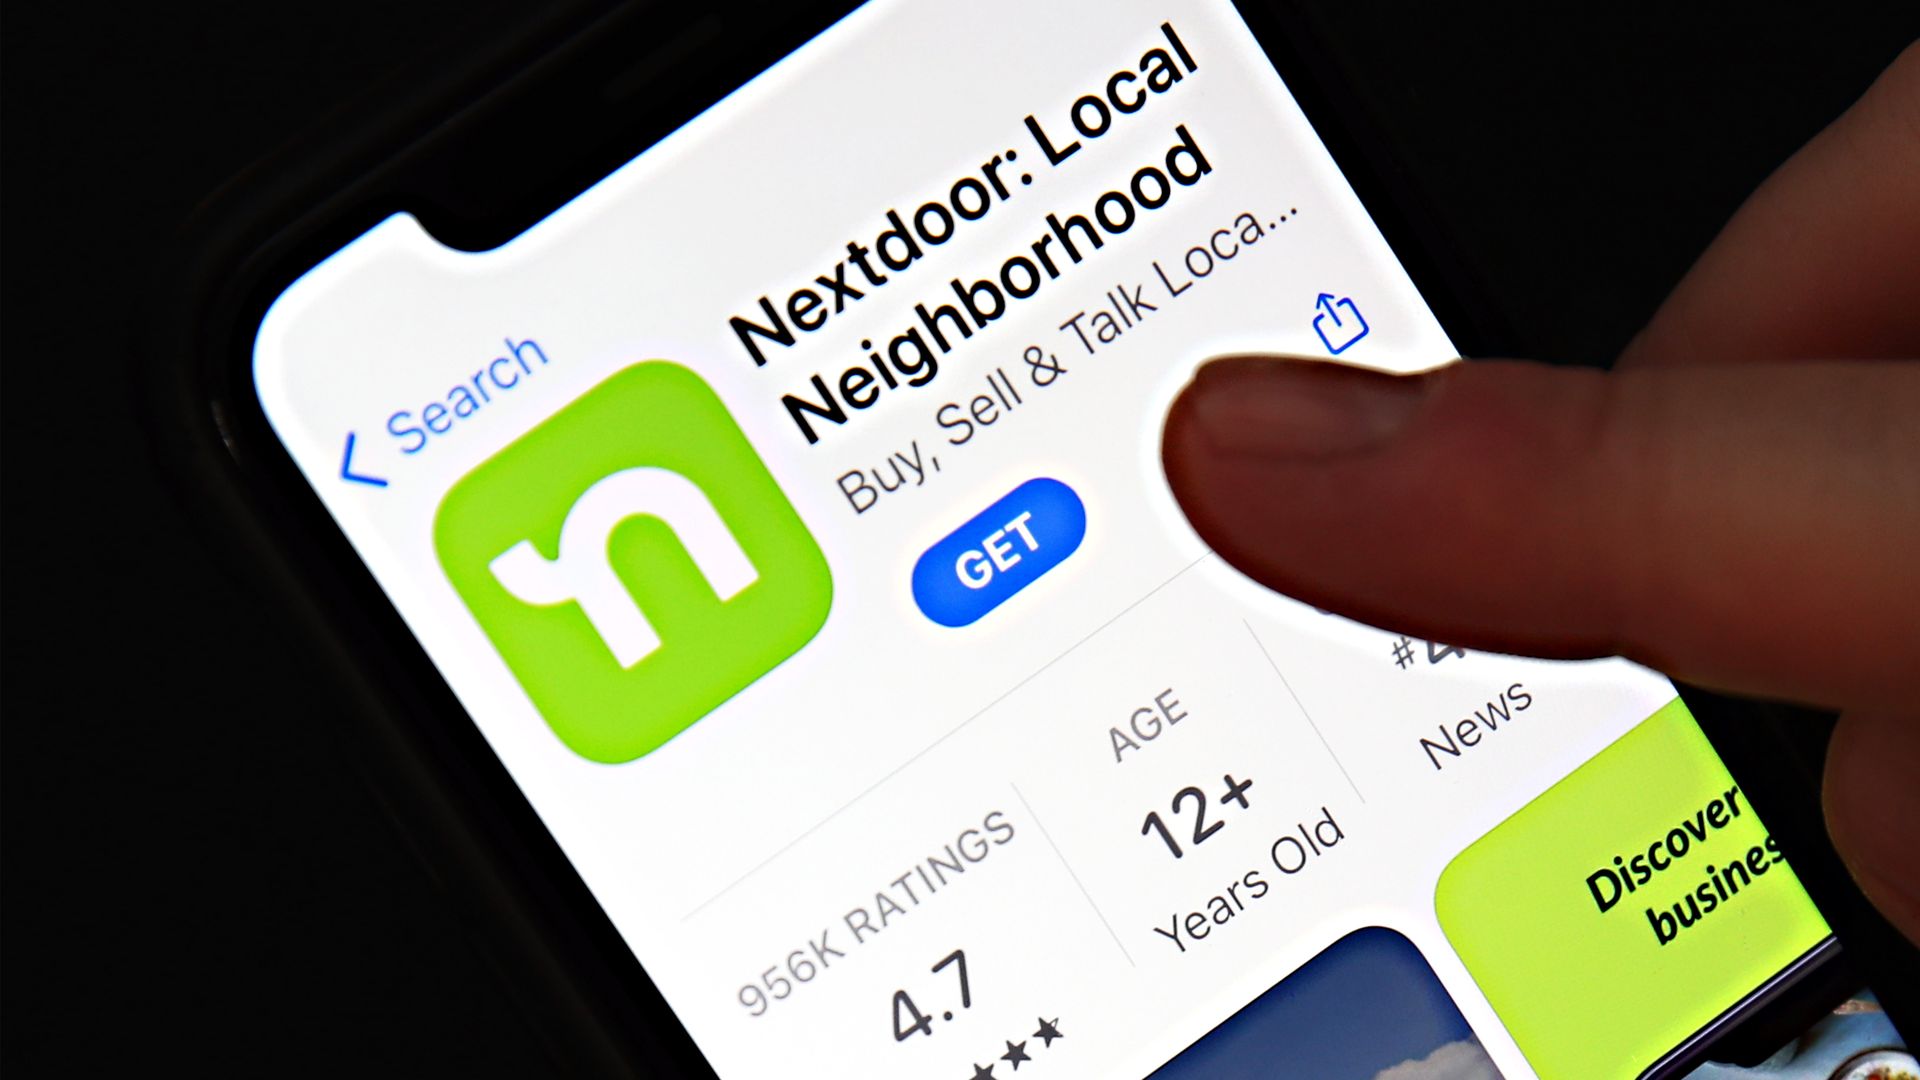 The Nextdoor app download screen seen on a smartphone.